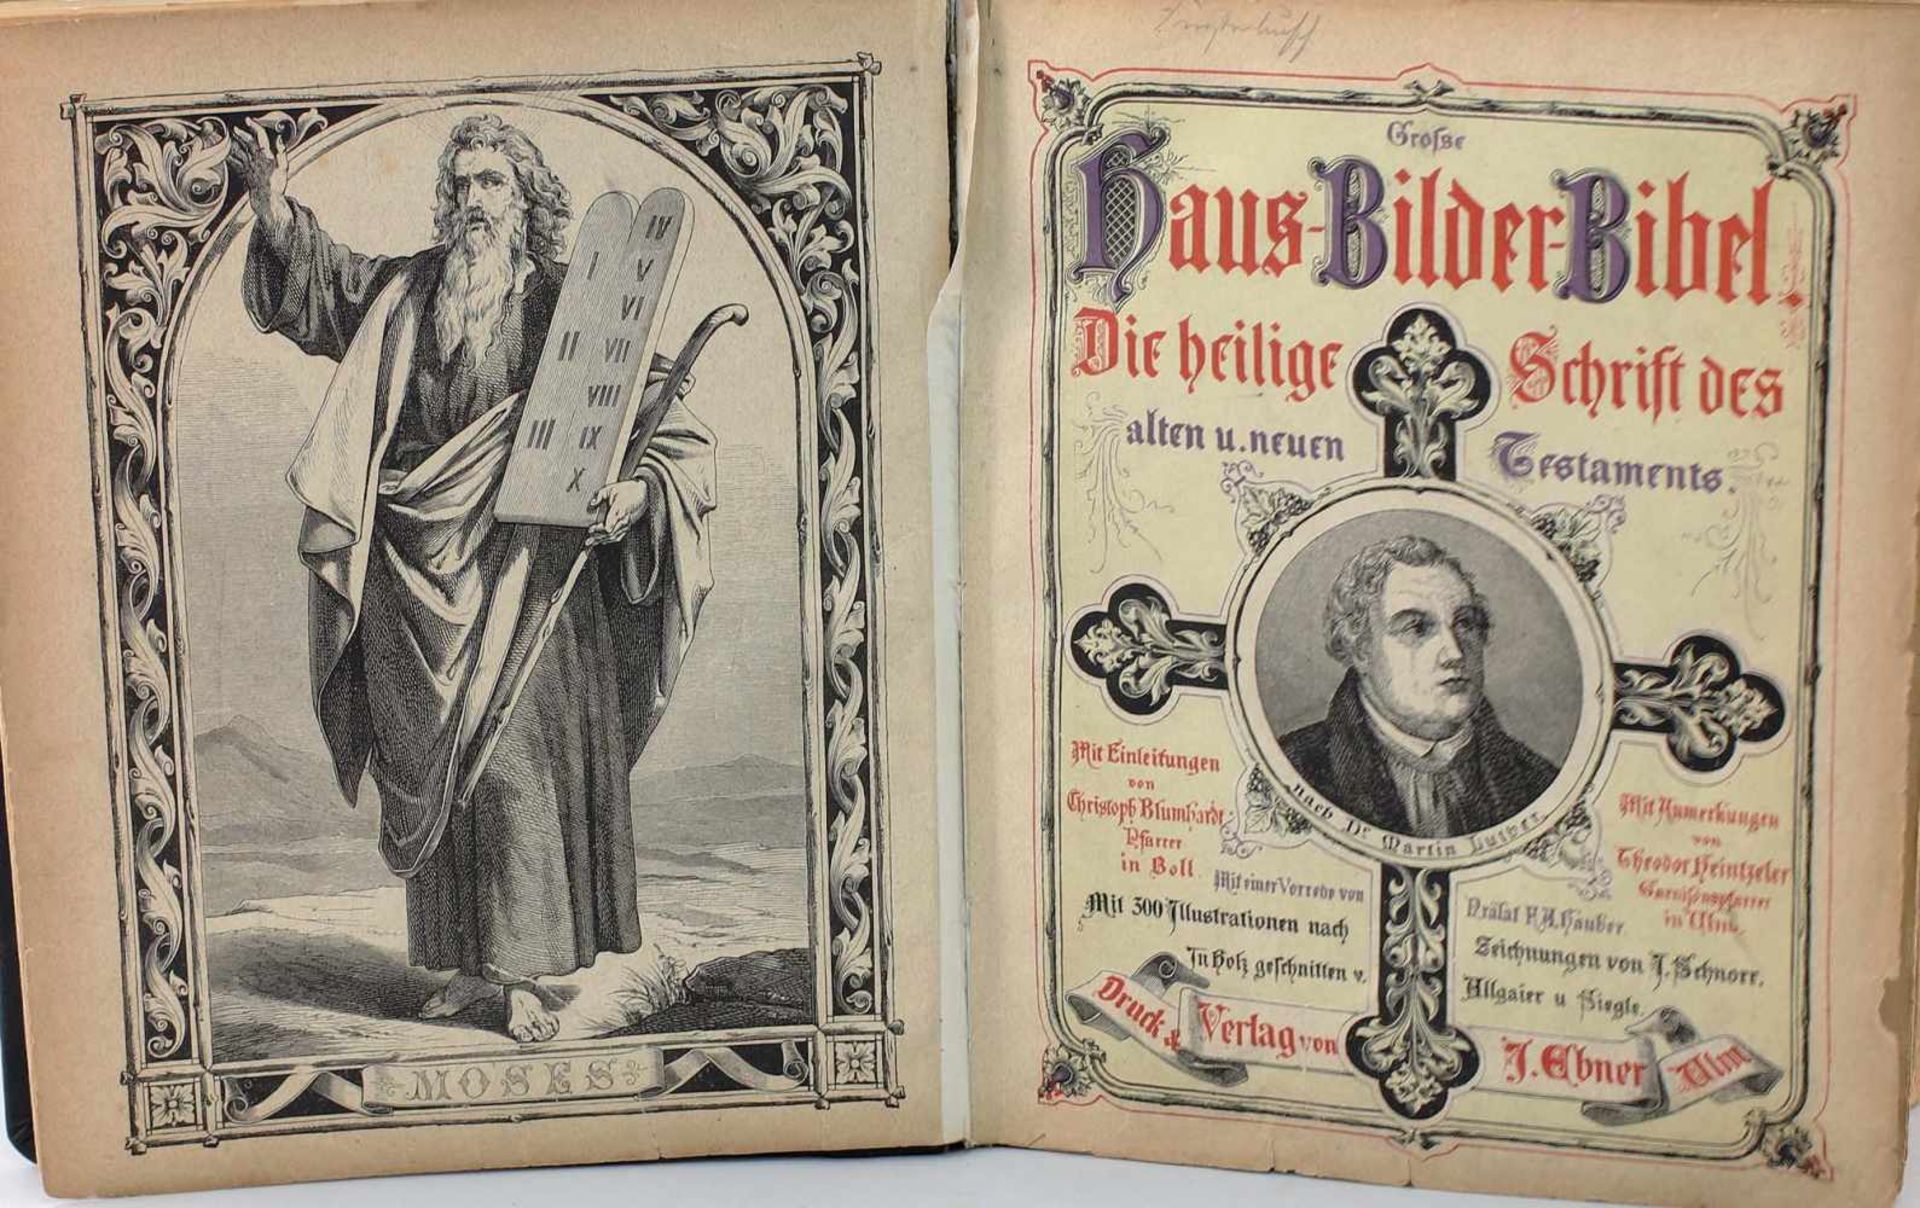 Große Haus-Bilder-Bibel 1873 - Image 2 of 3